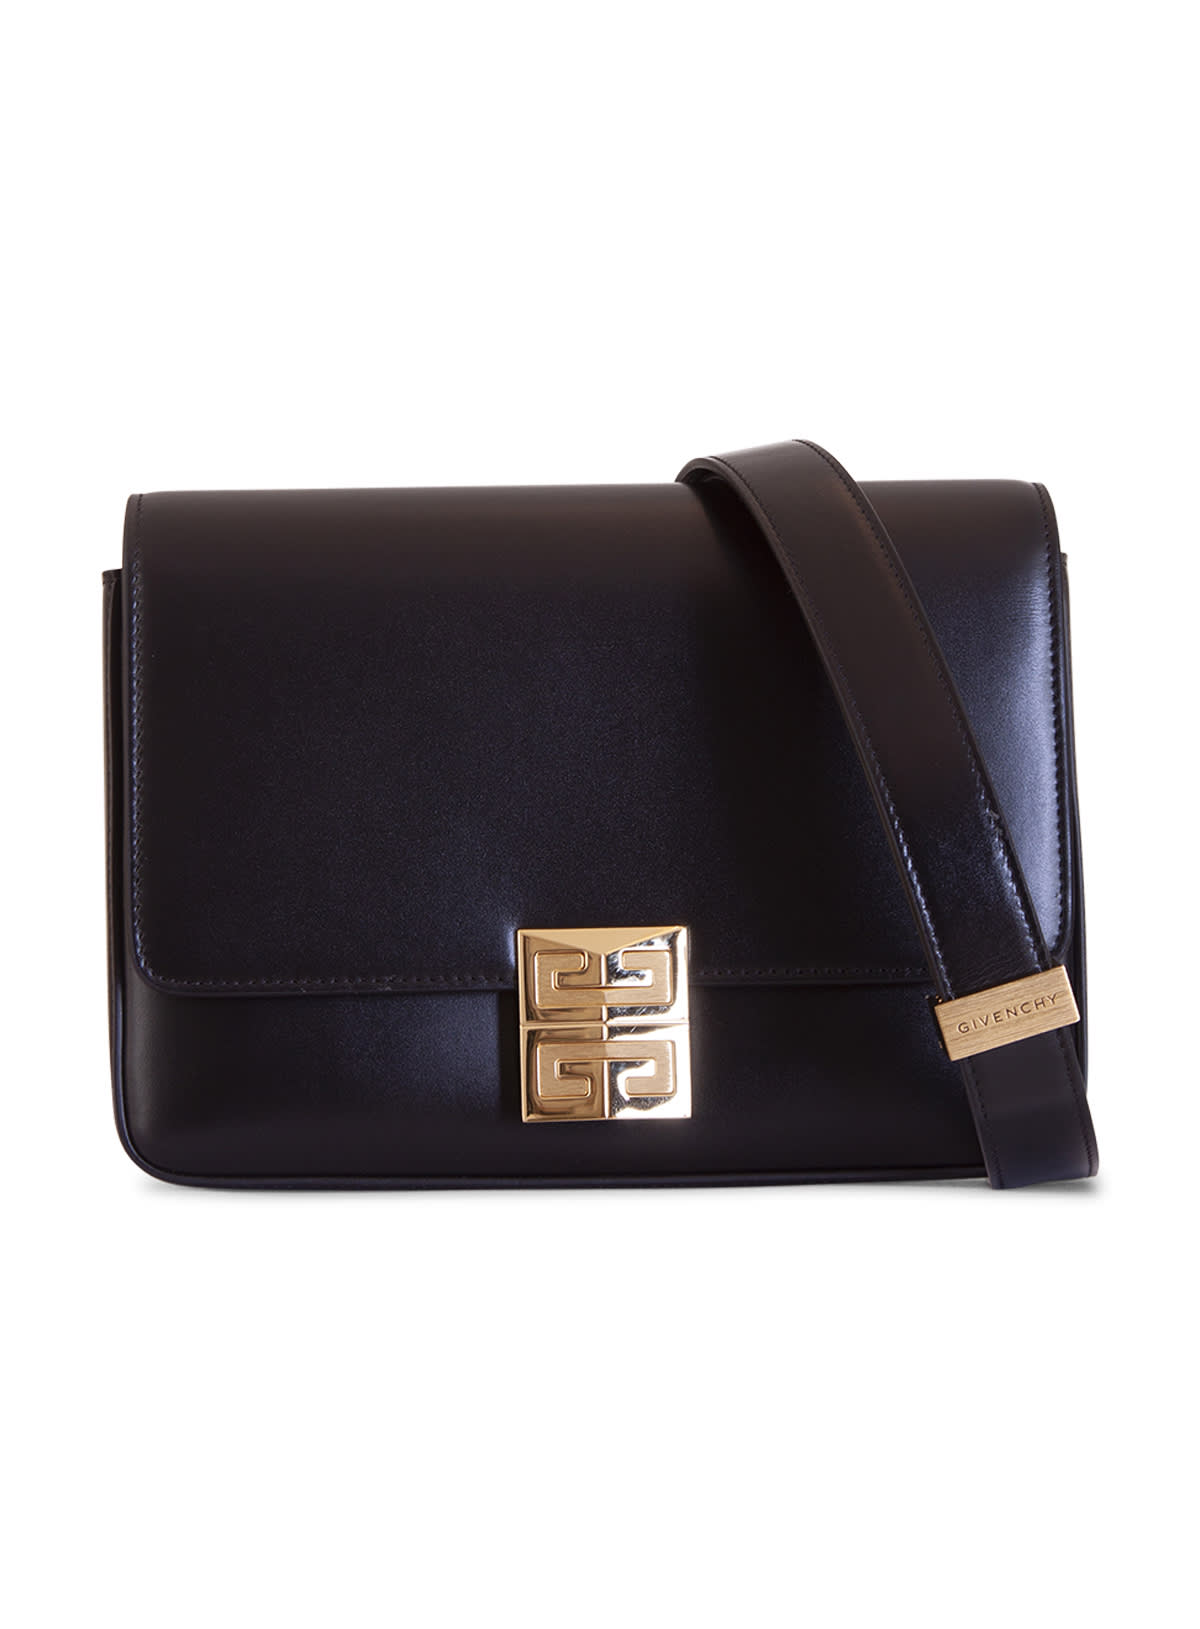 Givenchy 4g Shoulder Bag In Leather